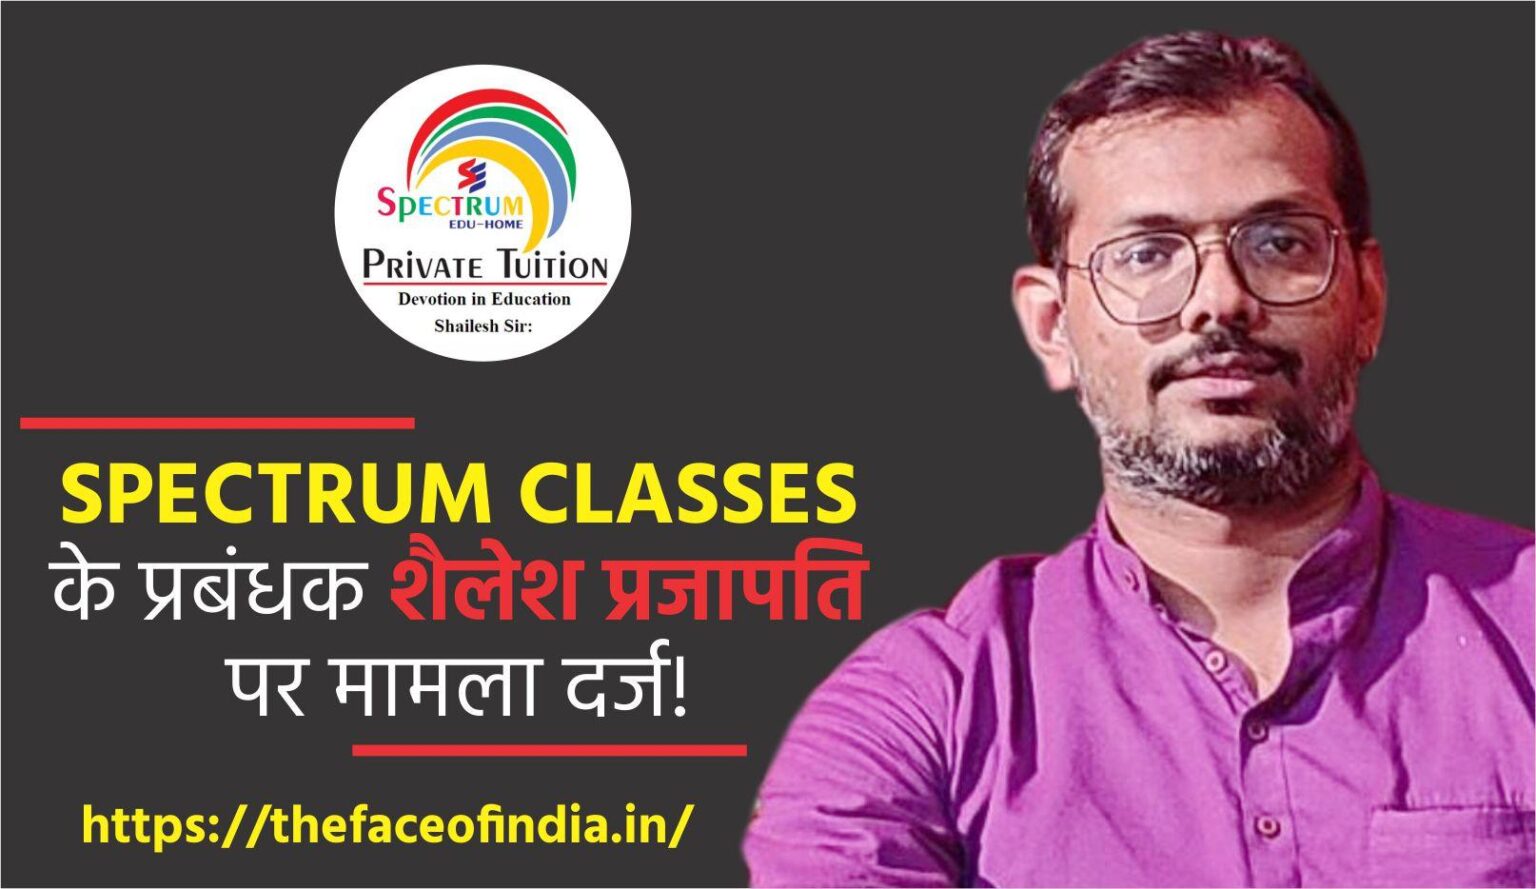 Spectrum Classes Shailesh Prajapati